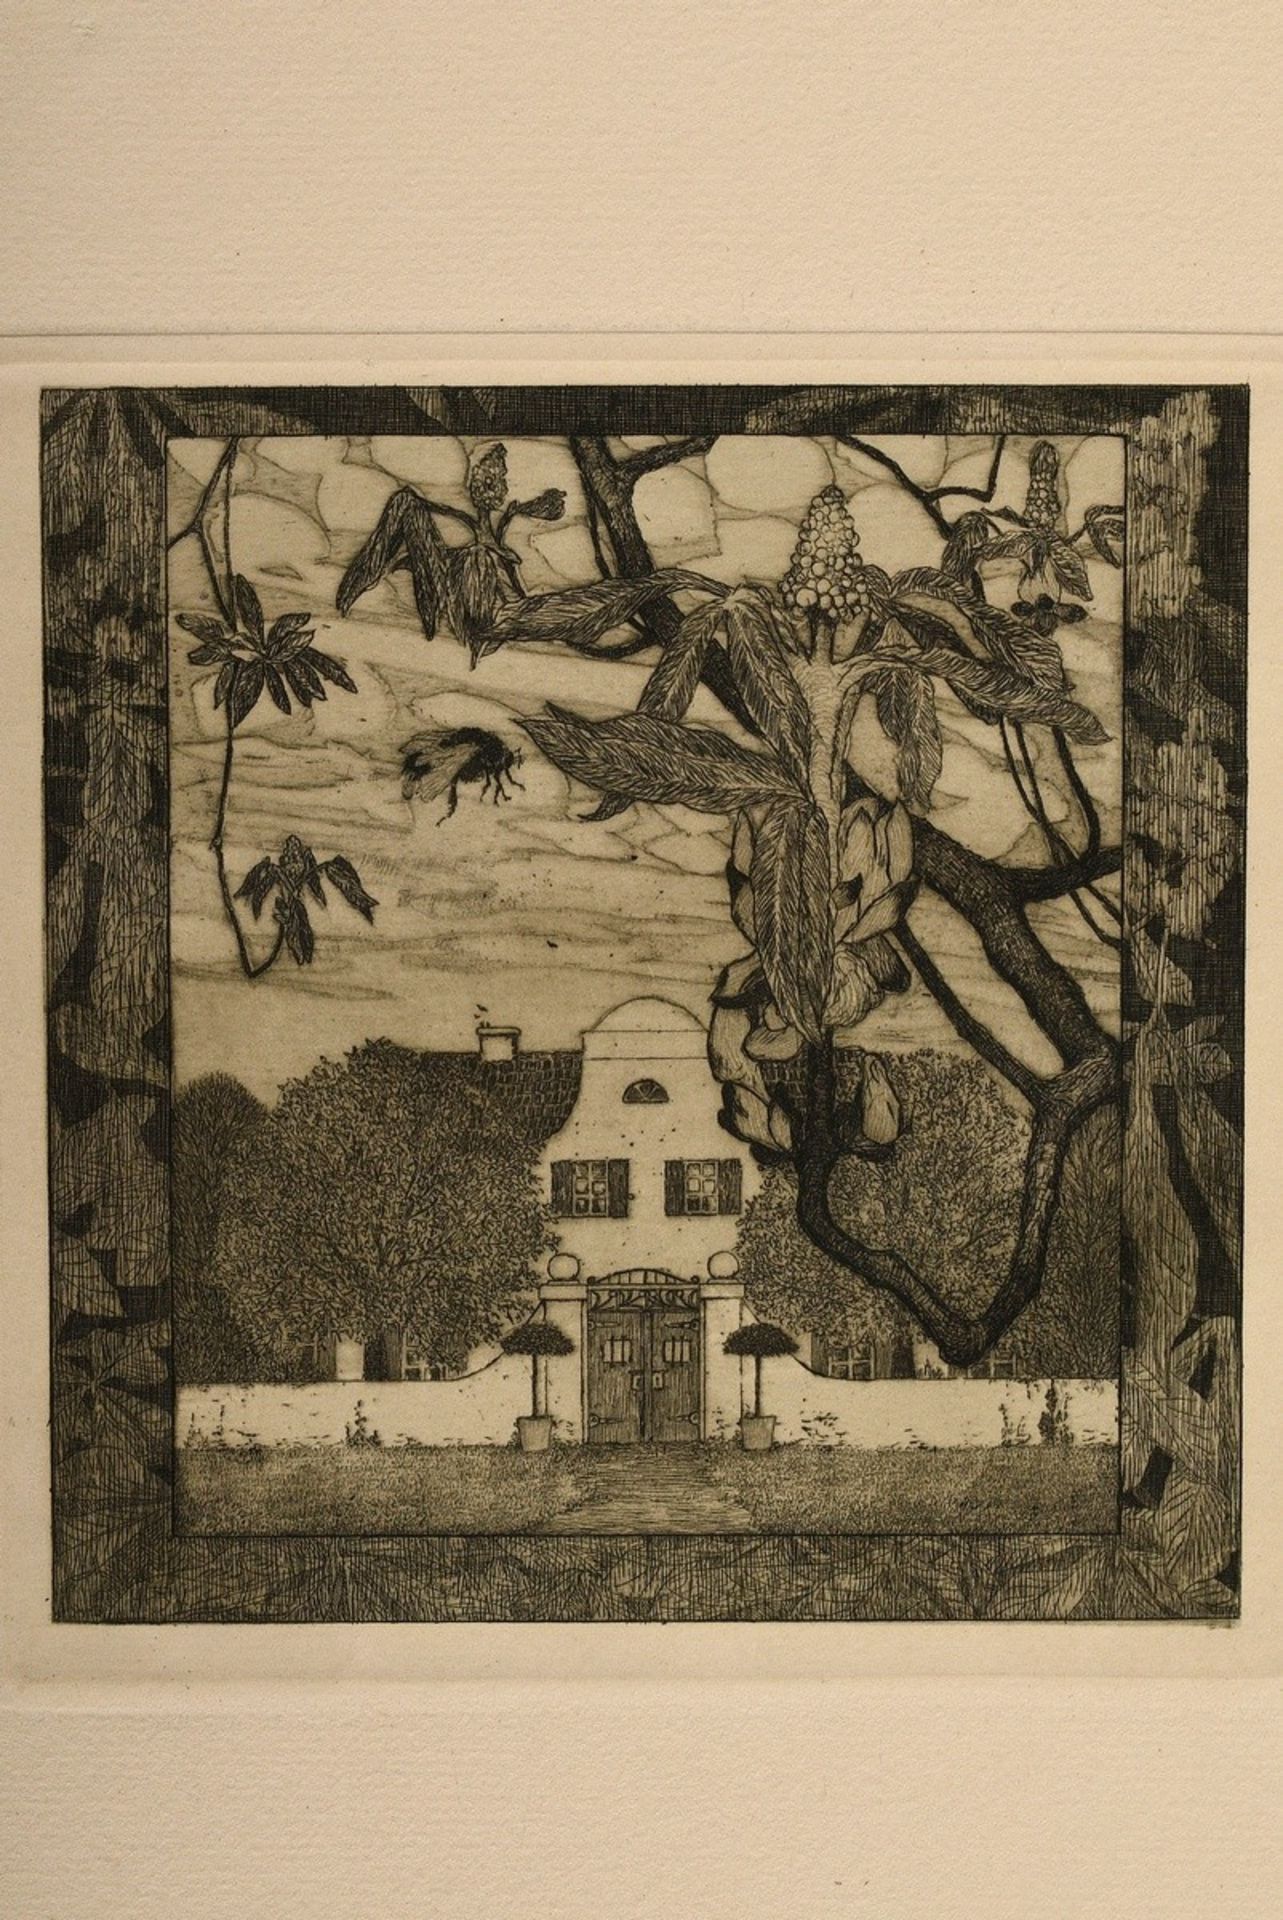 Vogeler, Heinrich (1872-1942) "An den Frühling" 1899/1901, portfolio with 10 etchings and prelimina - Image 15 of 25